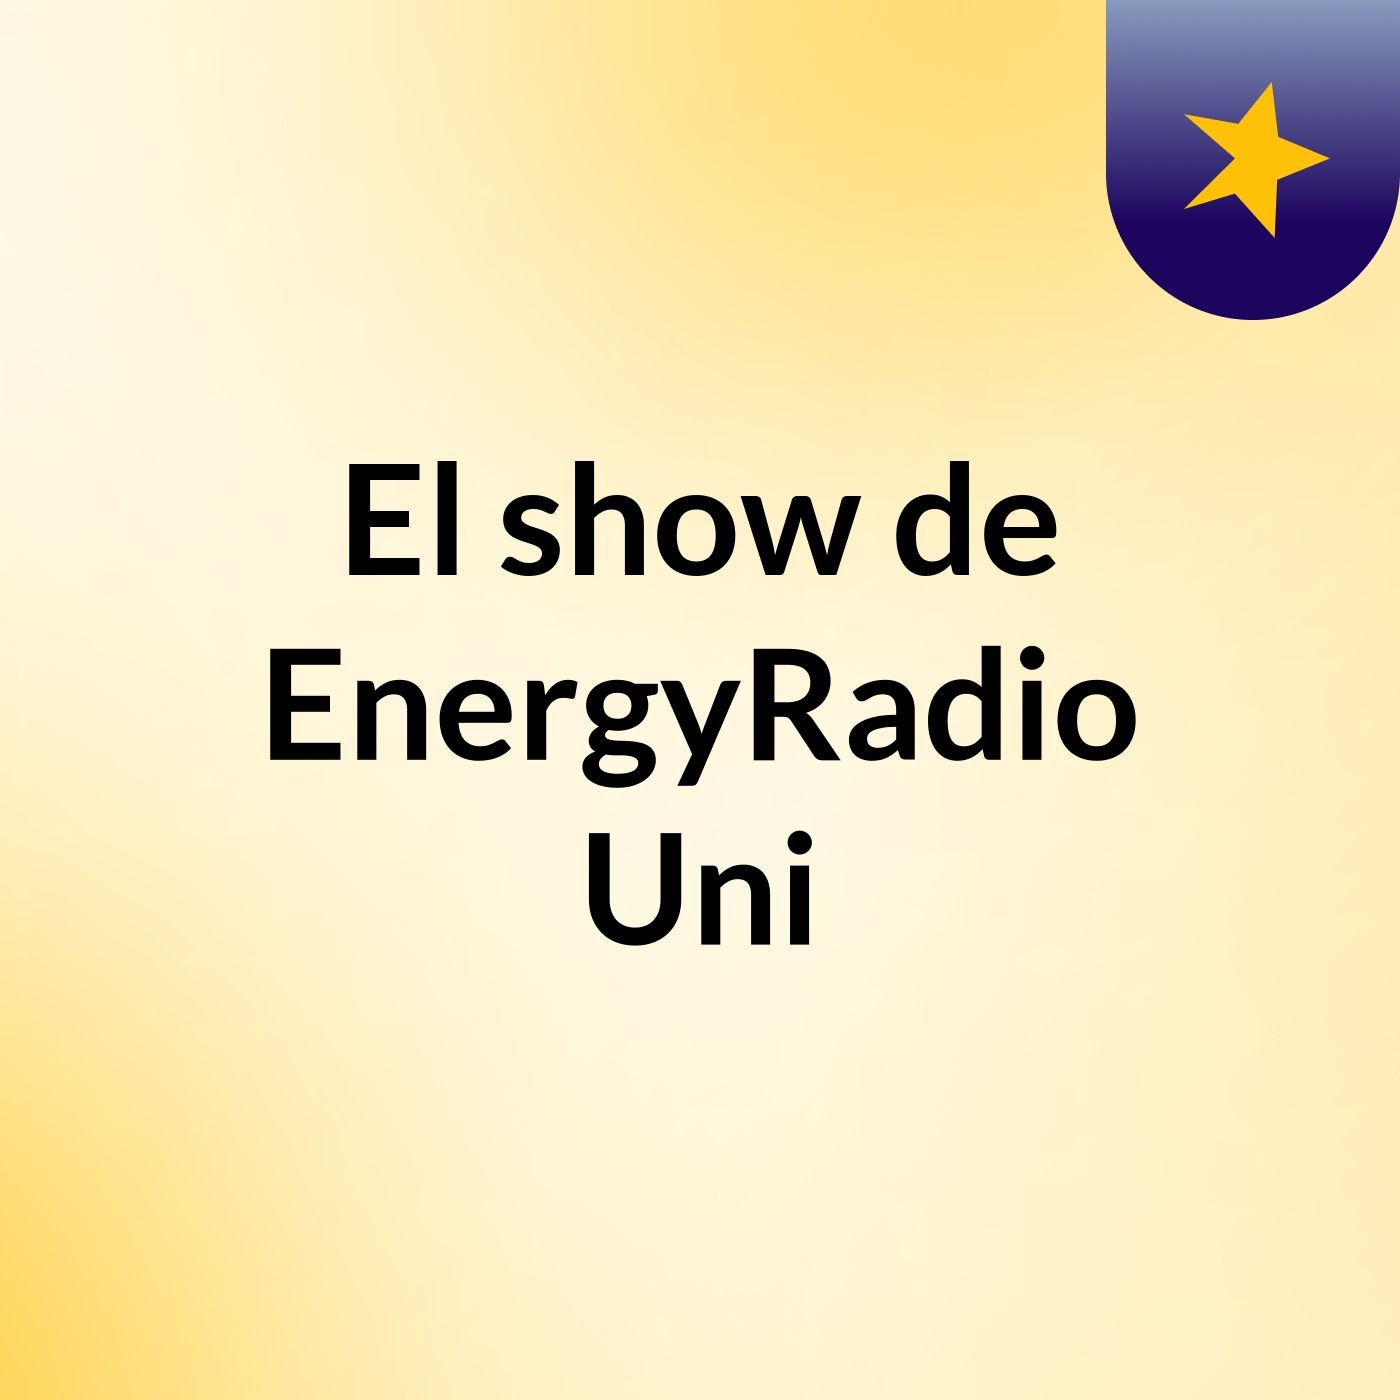 El show de EnergyRadio Uni